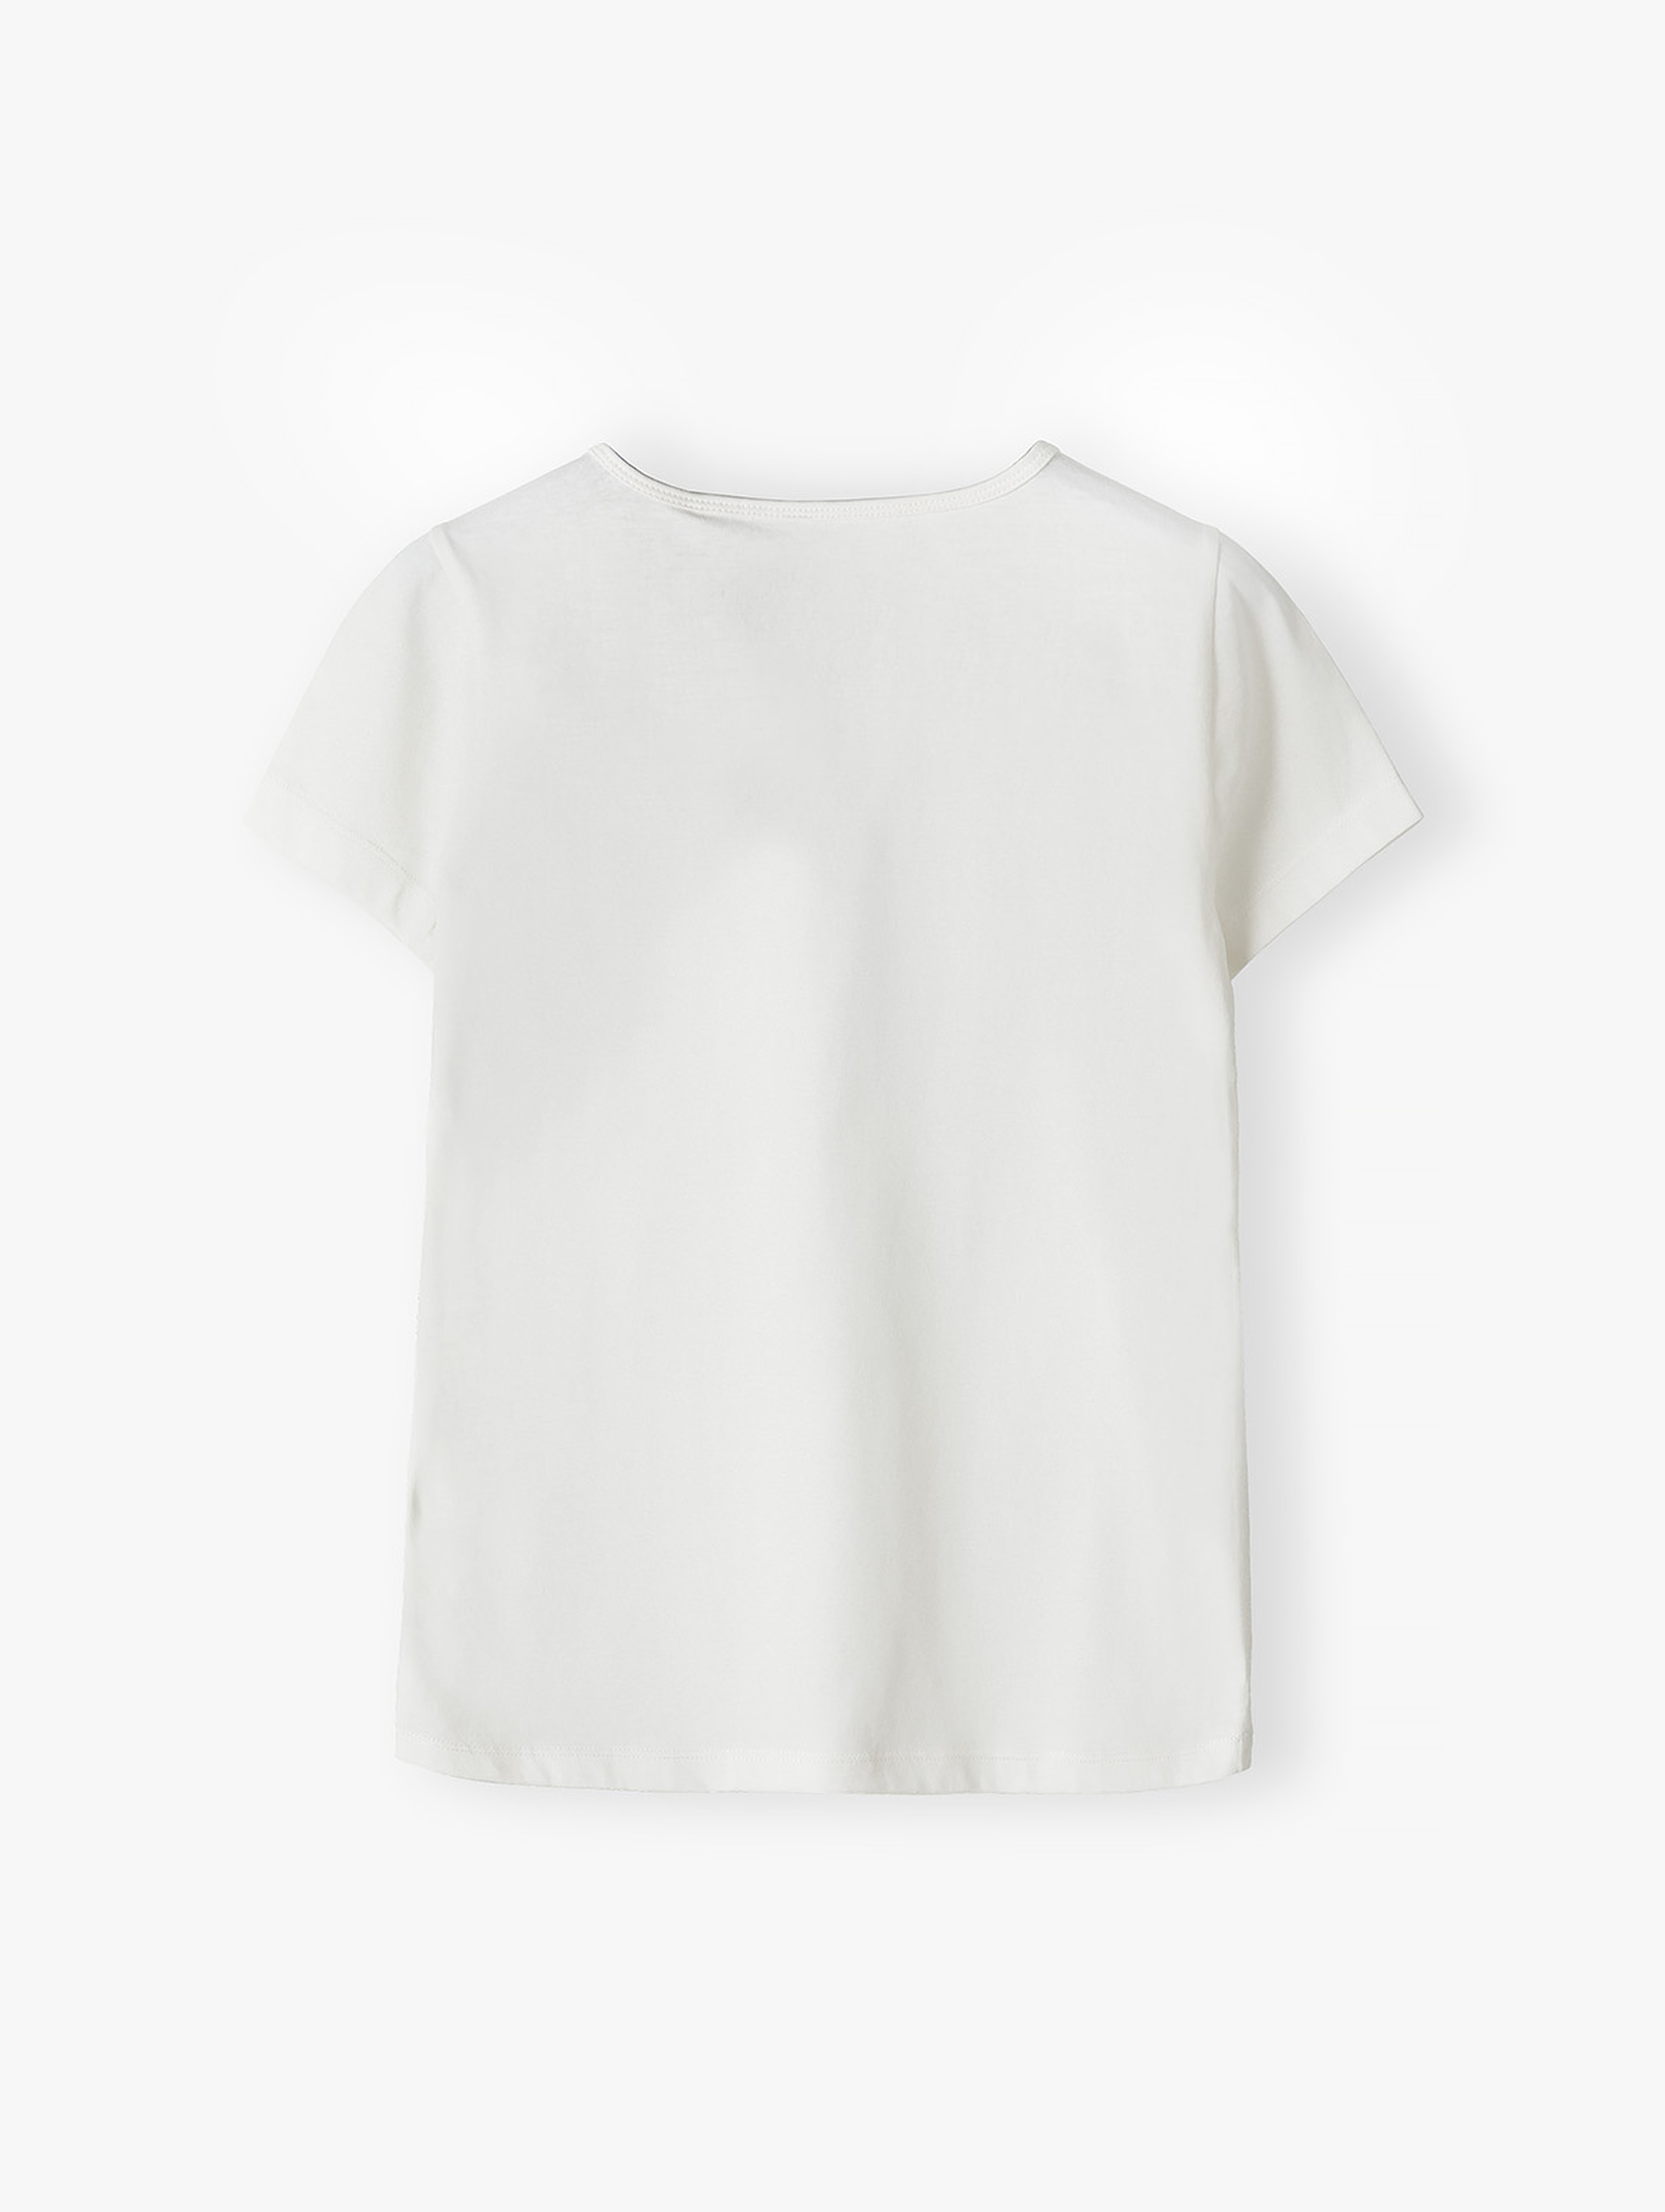 T-shirt damski biały - Marzycielka